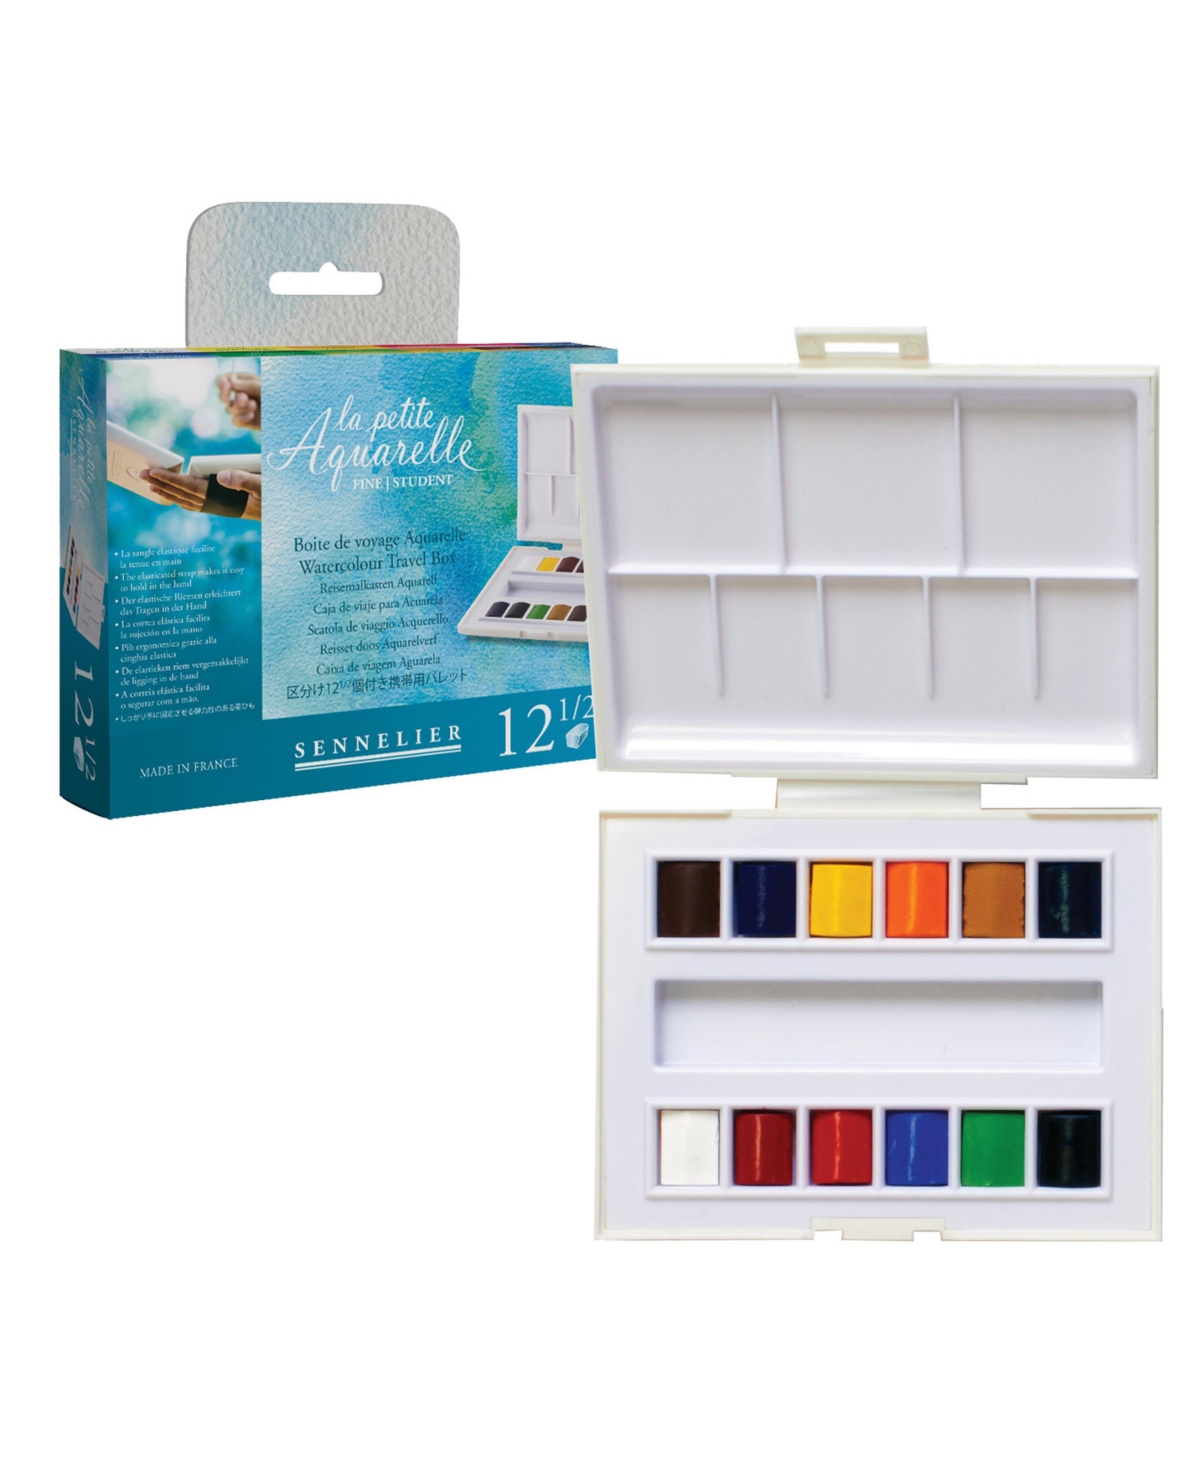 Sennelier L'Aquarelle Watercolor Travel Box 8 x 10ml Set